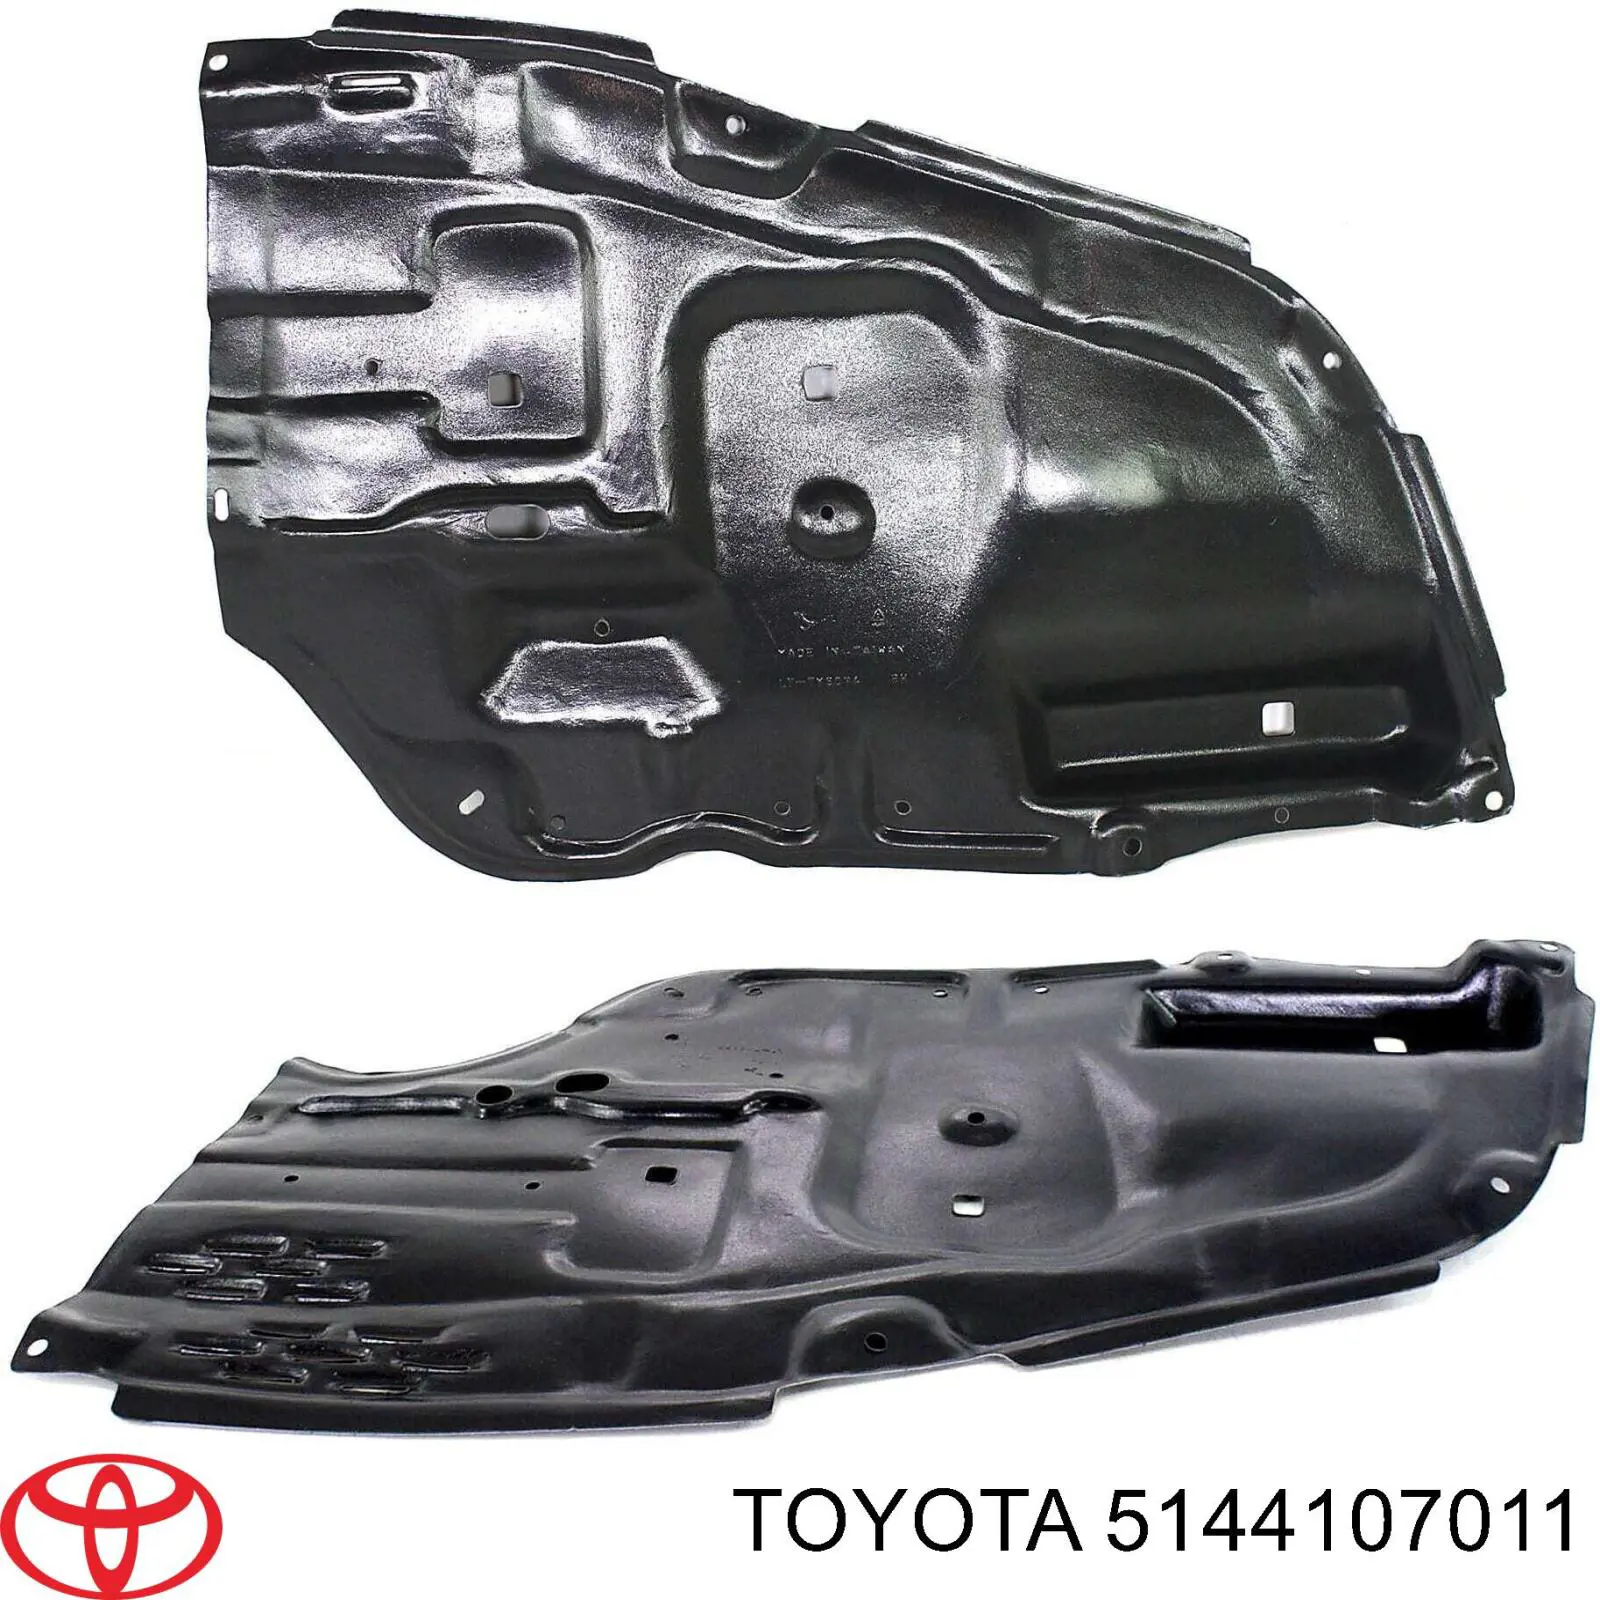 5144107011 Toyota proteção de motor direito